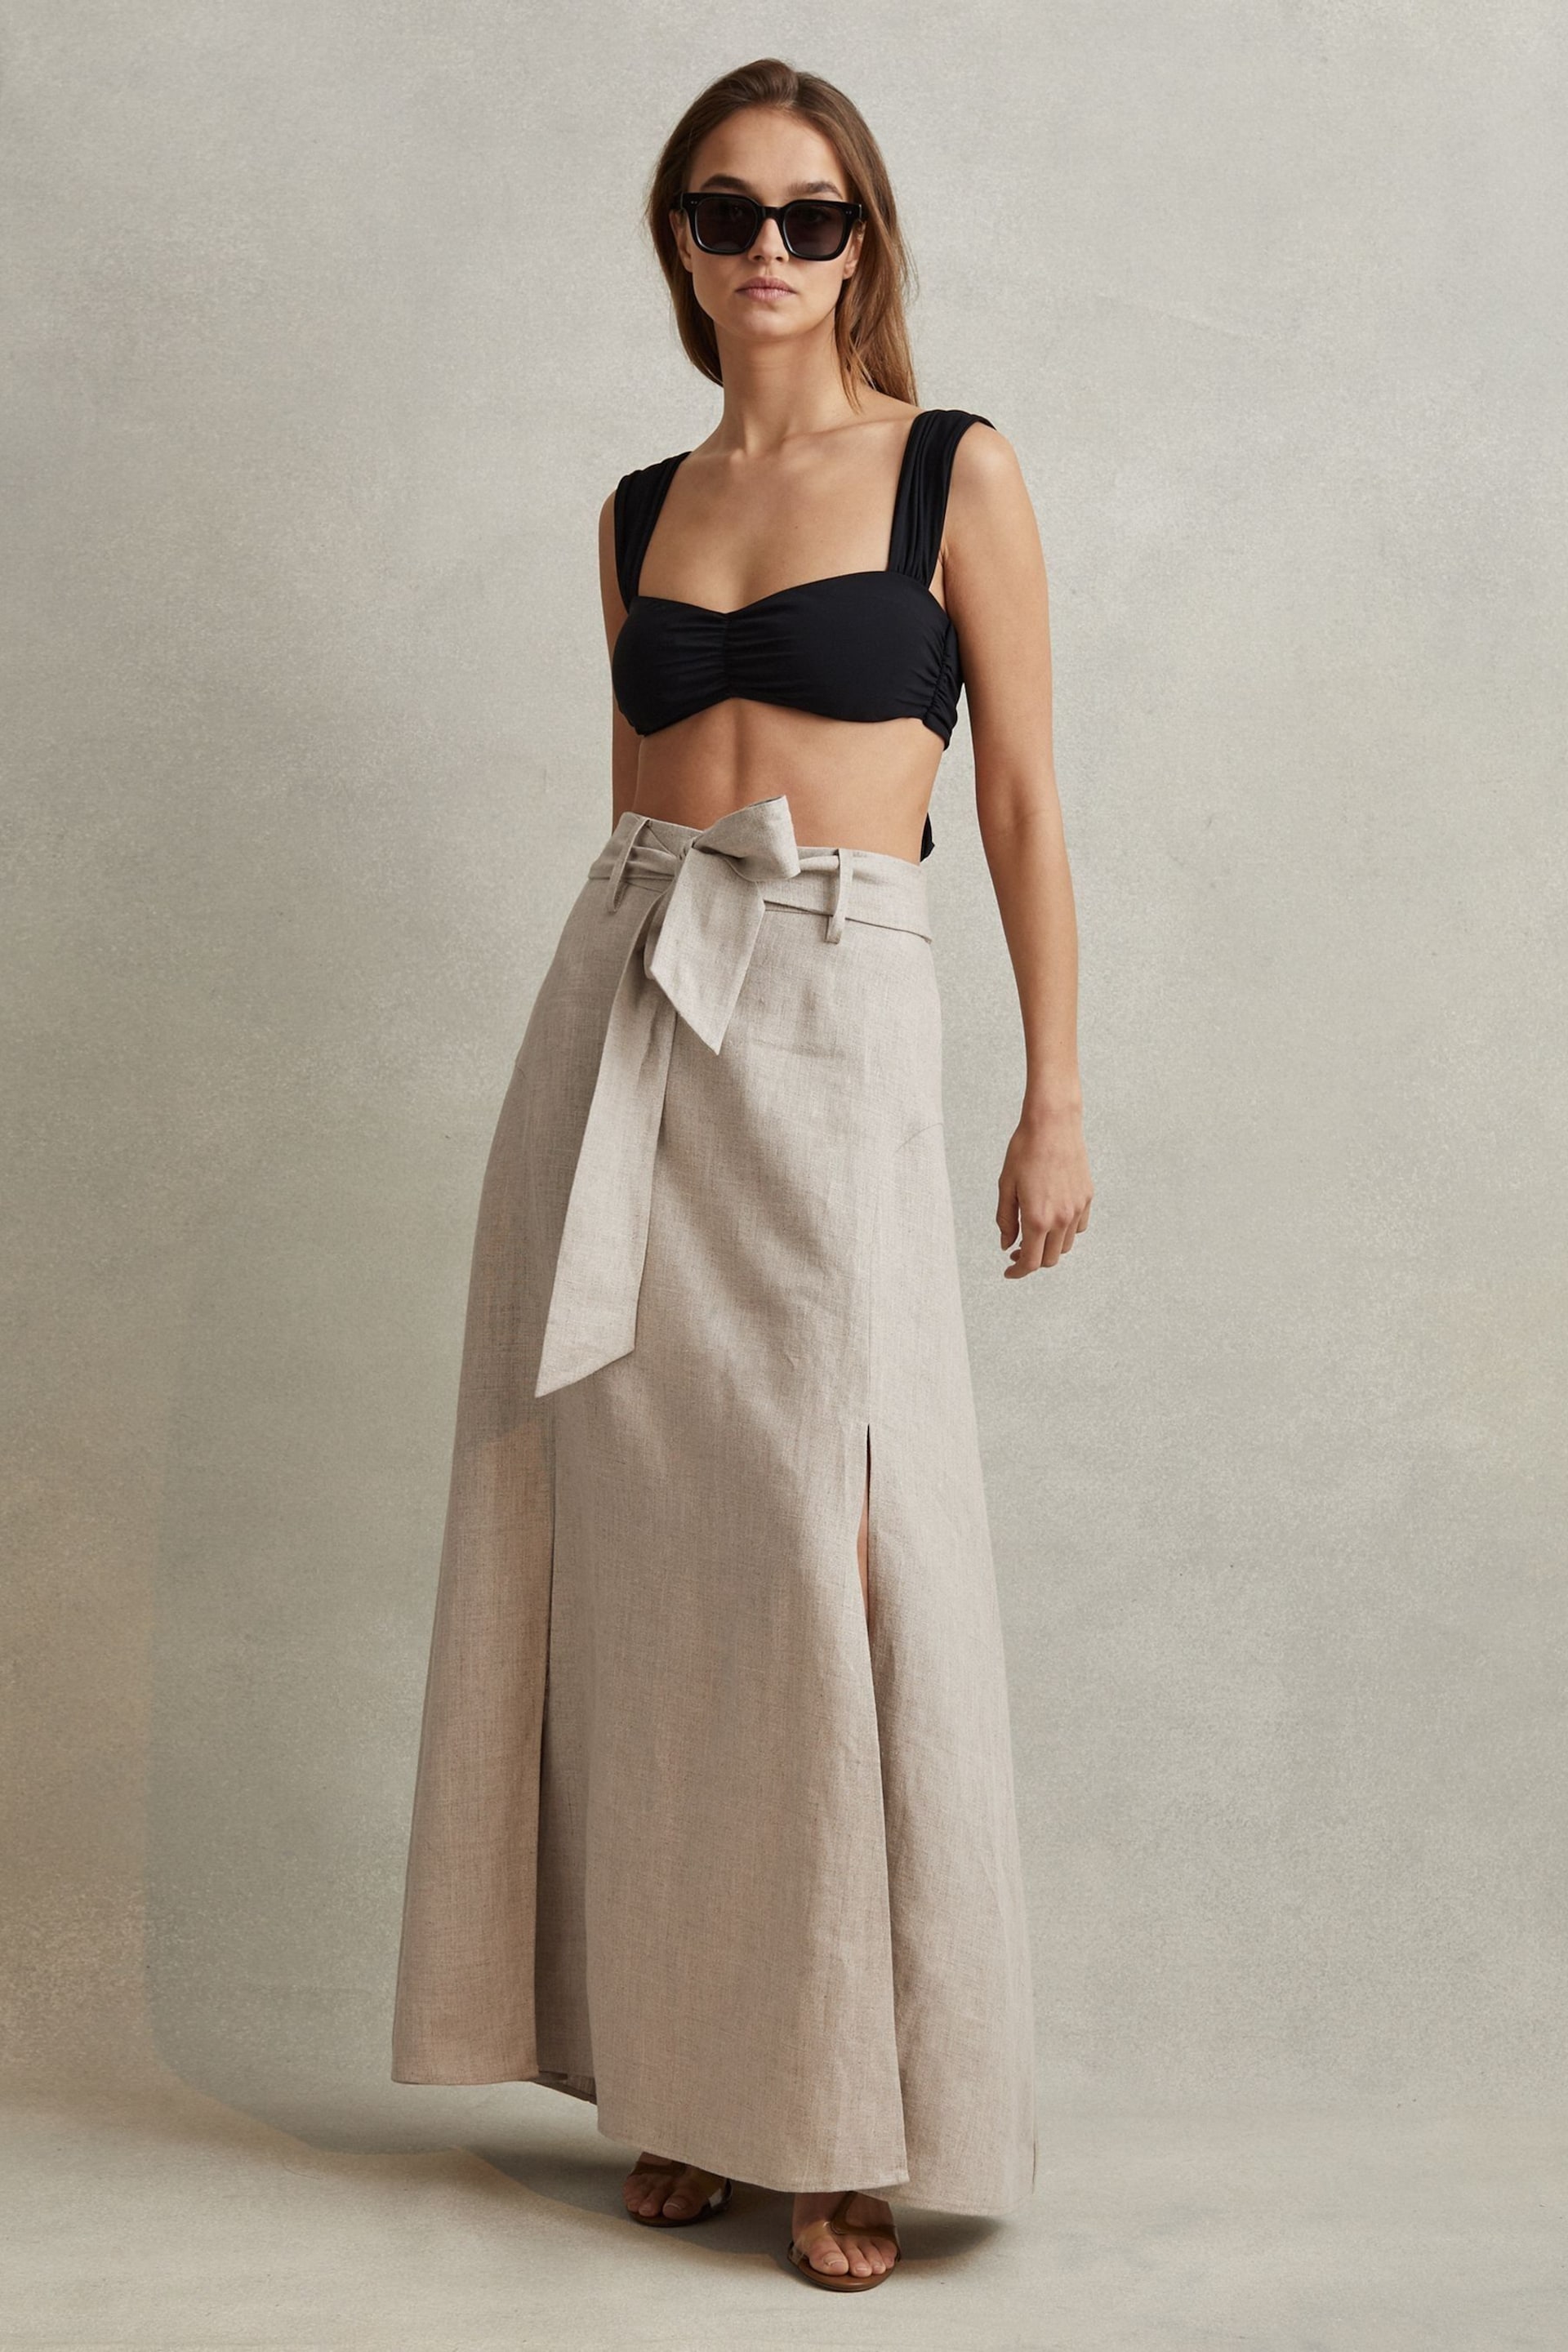 Reiss Neutral Abigail High Rise Linen Maxi Skirt - Image 4 of 7